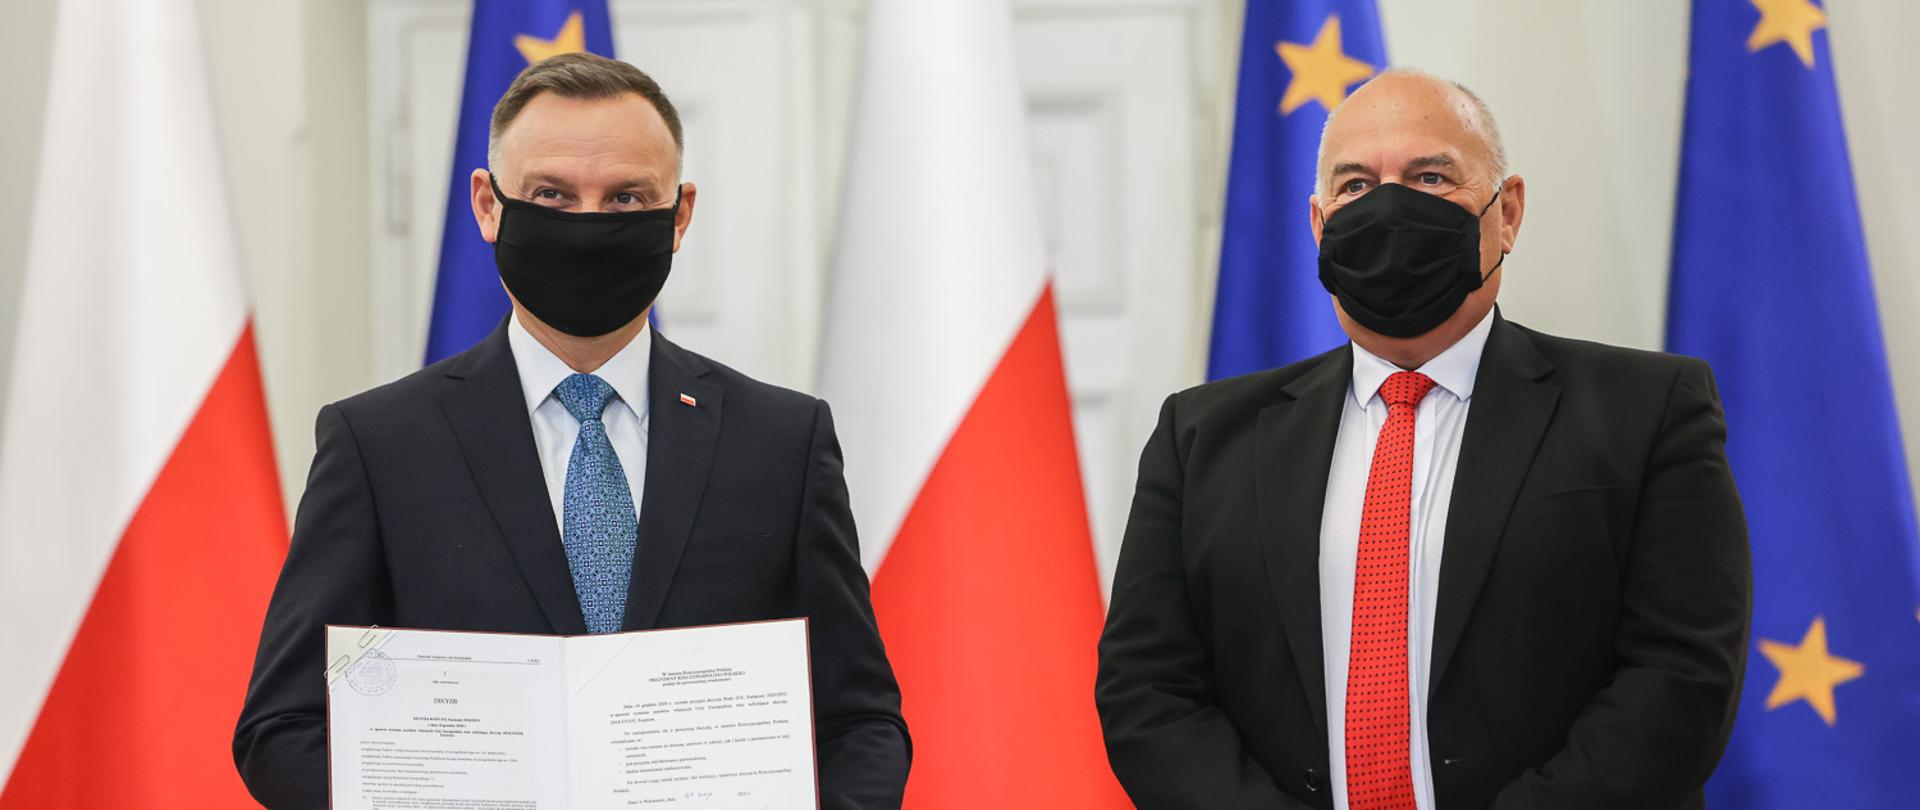 Prezydent Duda i Minister Kościński stoją z podpisaną ustawą, w tle stoją flaga Polska i UE 